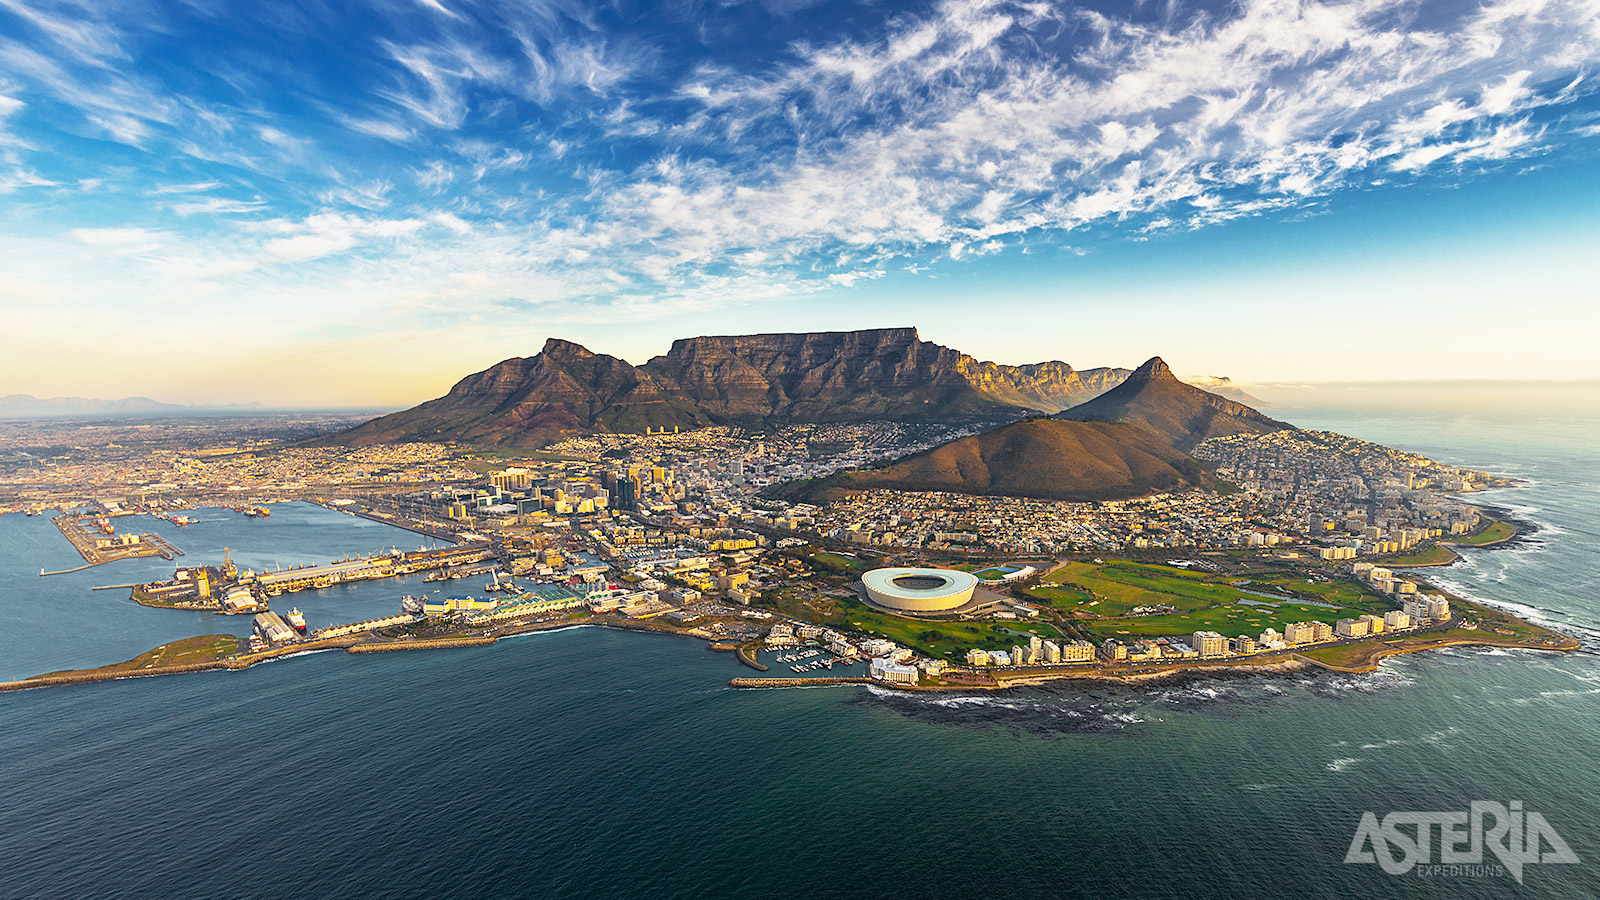 Kaapstad met de Tafelberg is één van de mooiste steden in de wereld